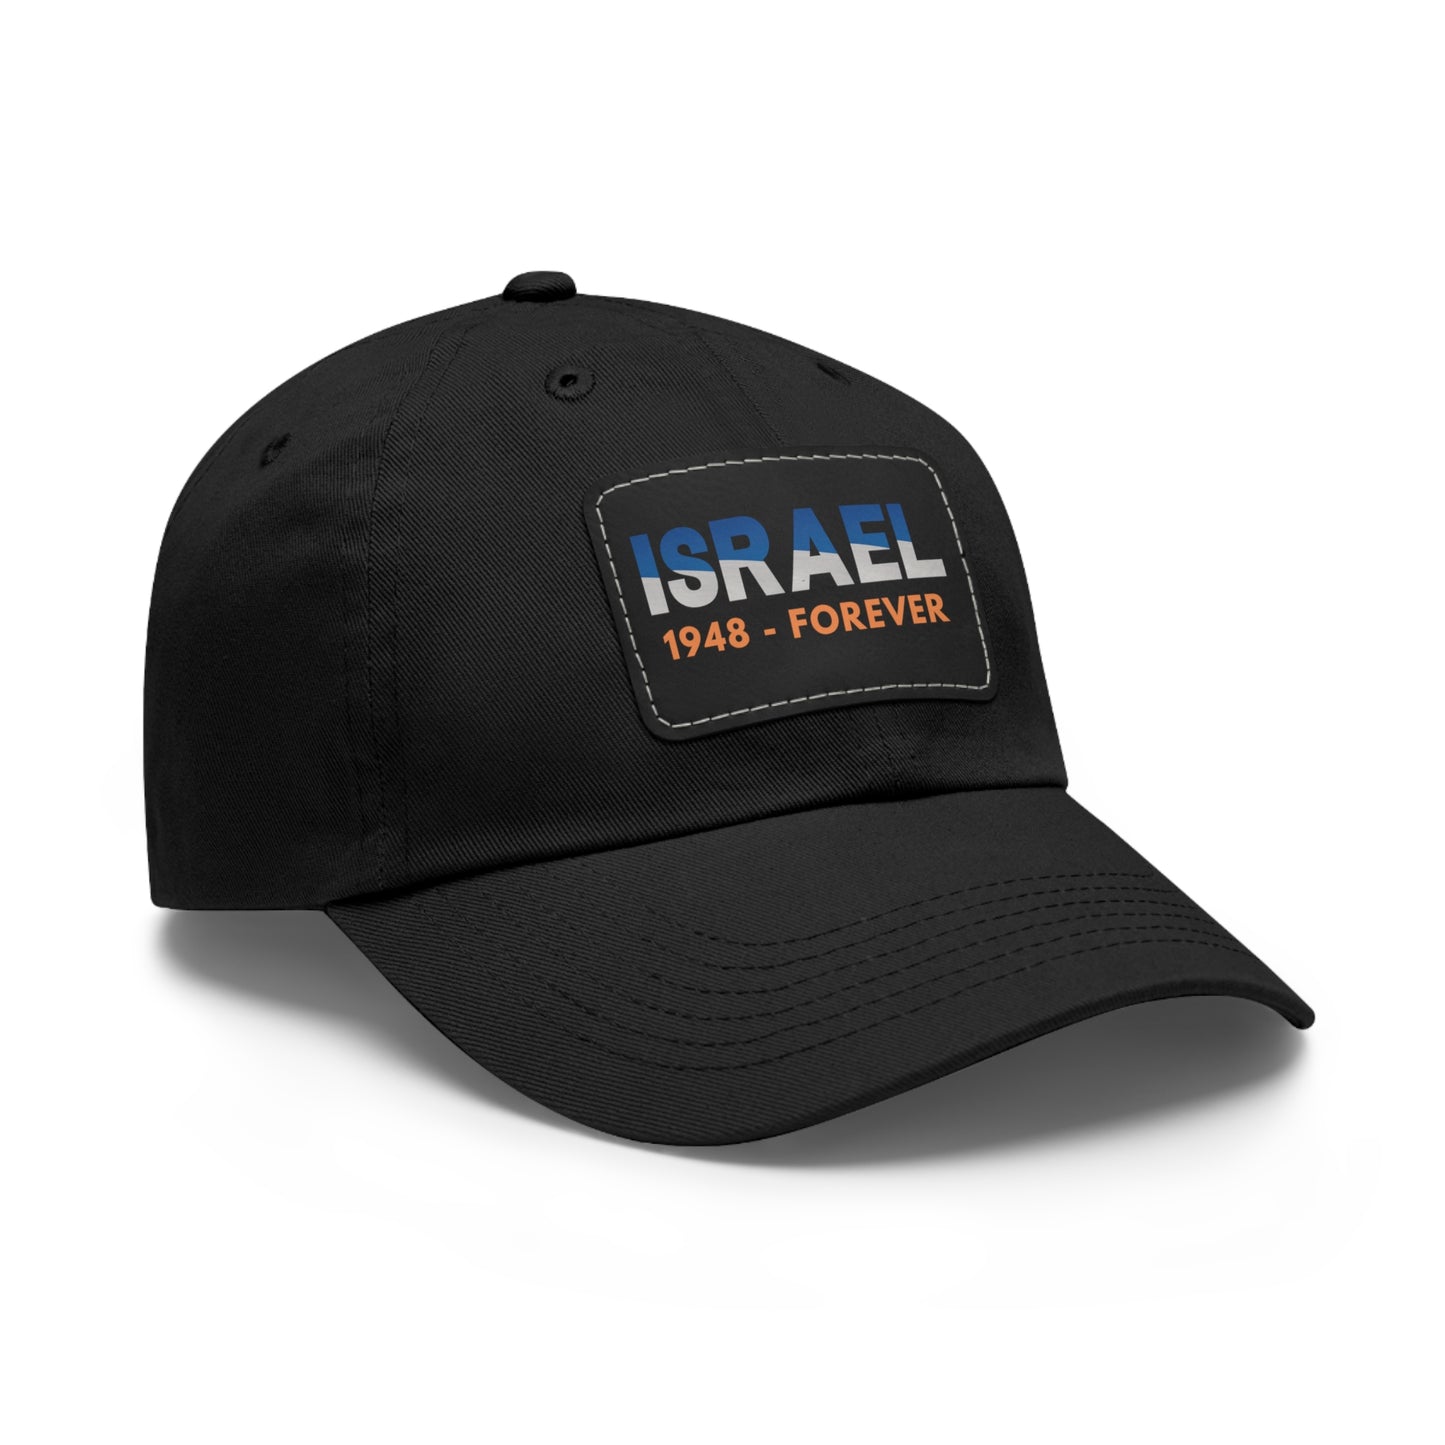 Israel 1948-Forever Hat